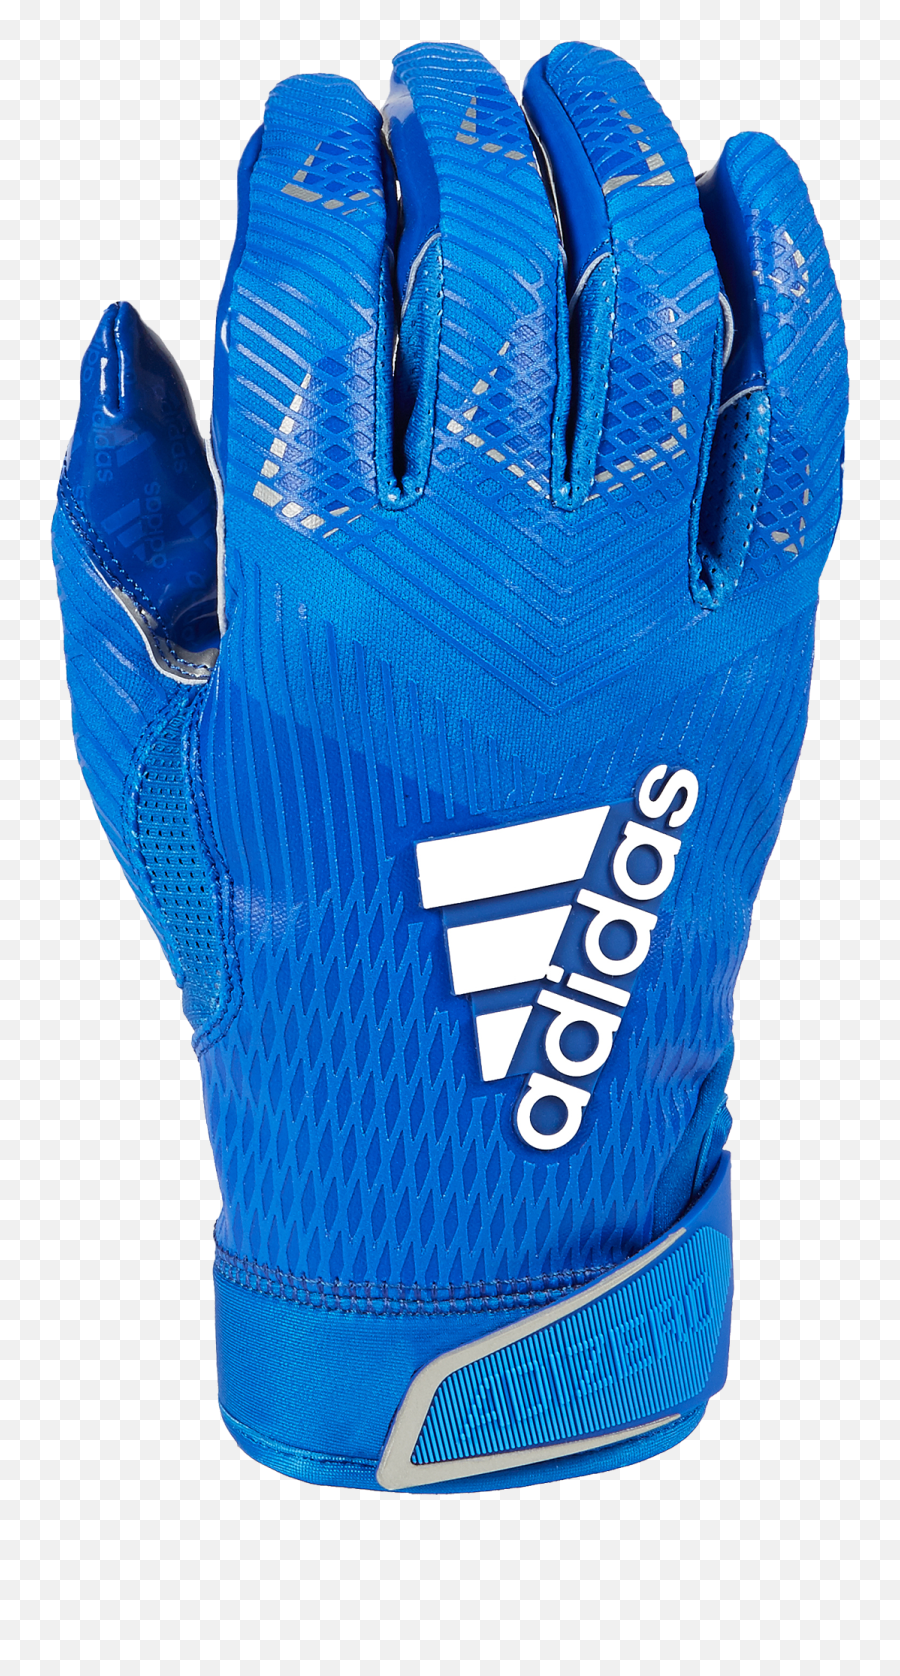 Adizero 5 Star 8 - Adidas Emoji,Adidas Emoji Receiver Gloves